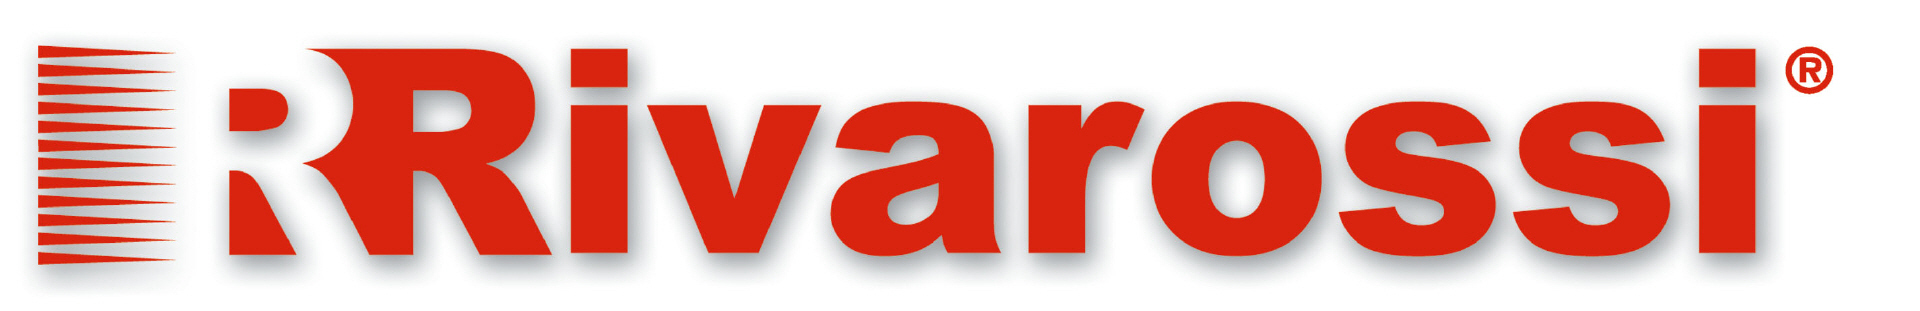 rivarossi-logo2013